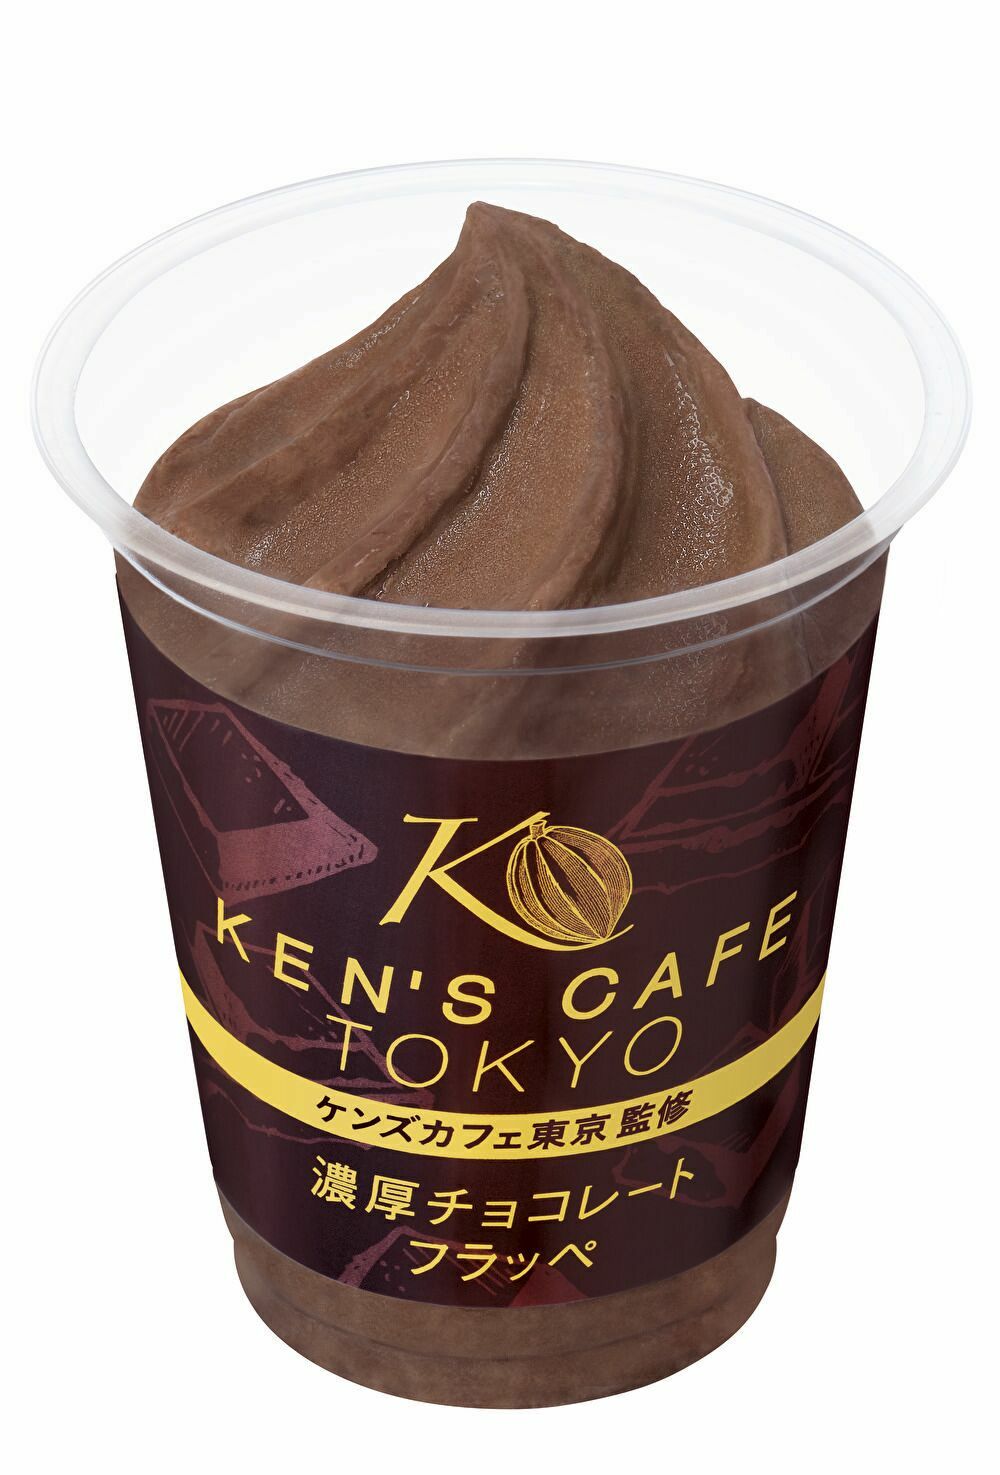 ケンズカフェ東京がファミリーマートのロングセラー 「FAMIMA CAFÉ」のフラッペシリーズを監修　 9月18日『ケンズカフェ東京監修 濃厚チョコレートフラッペ』を 数量限定で発売